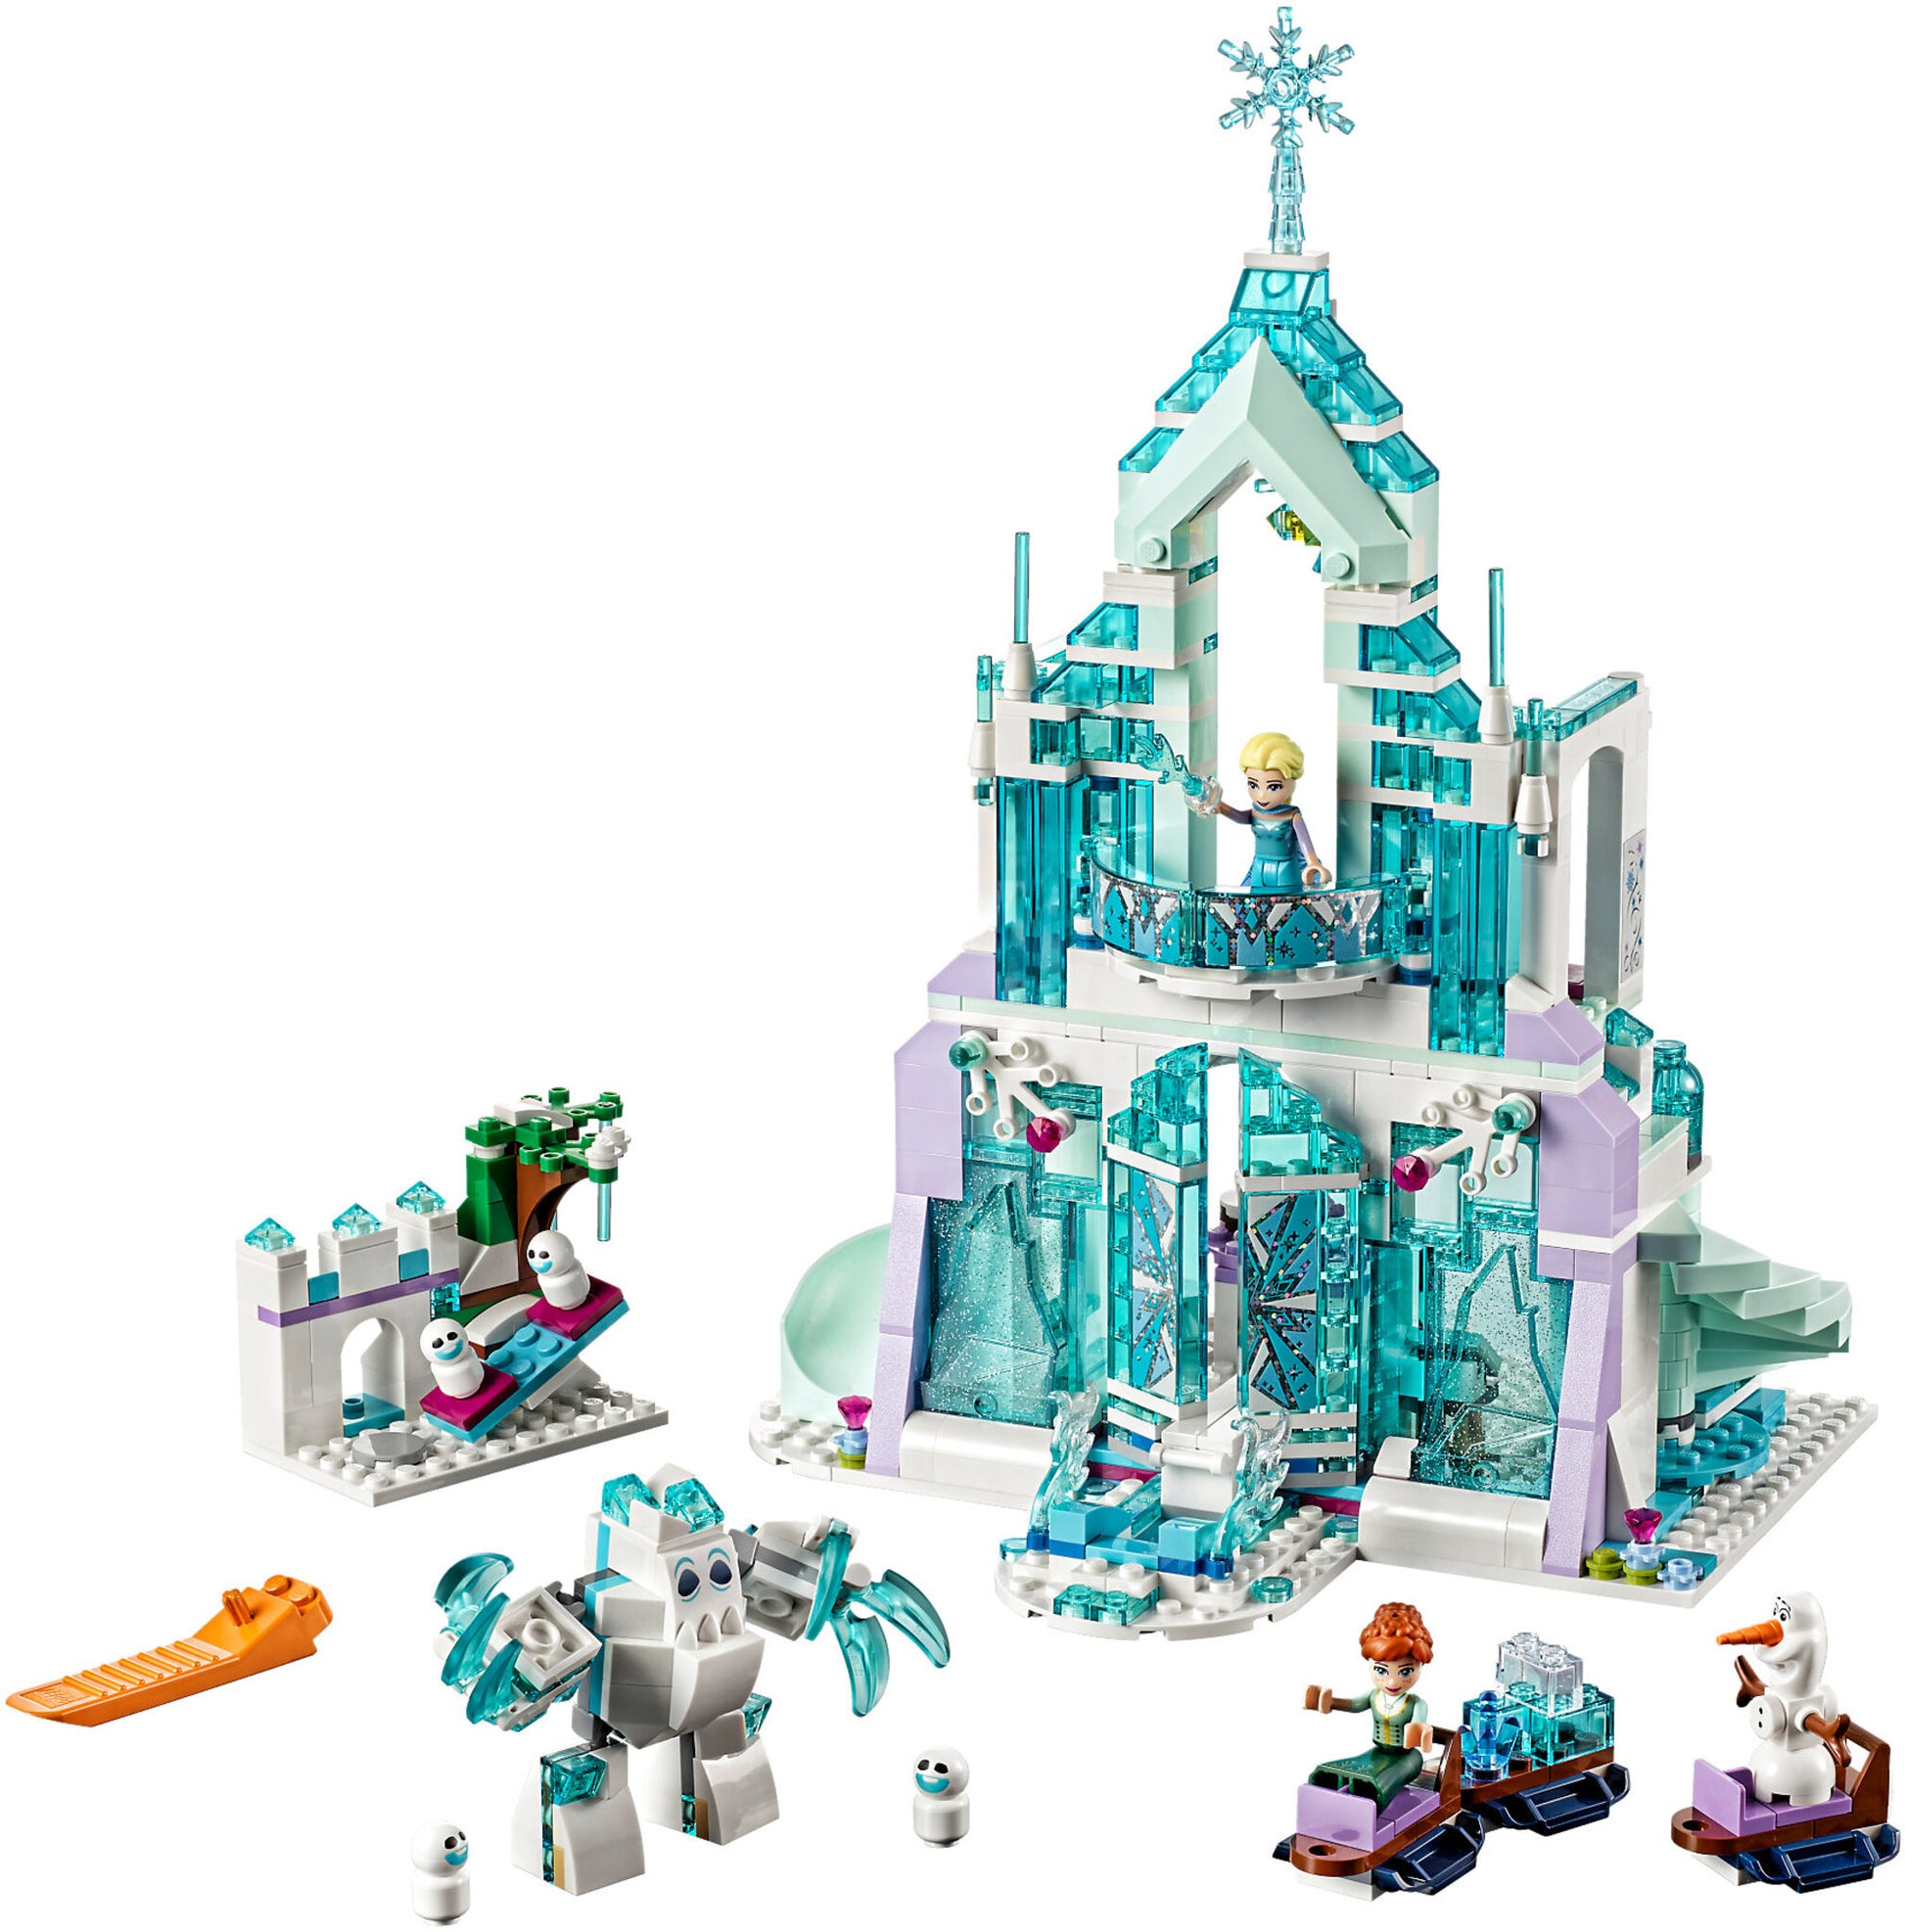 LEGO Ice Castle, svelato il castello di Elsa 43197 tratto dal film